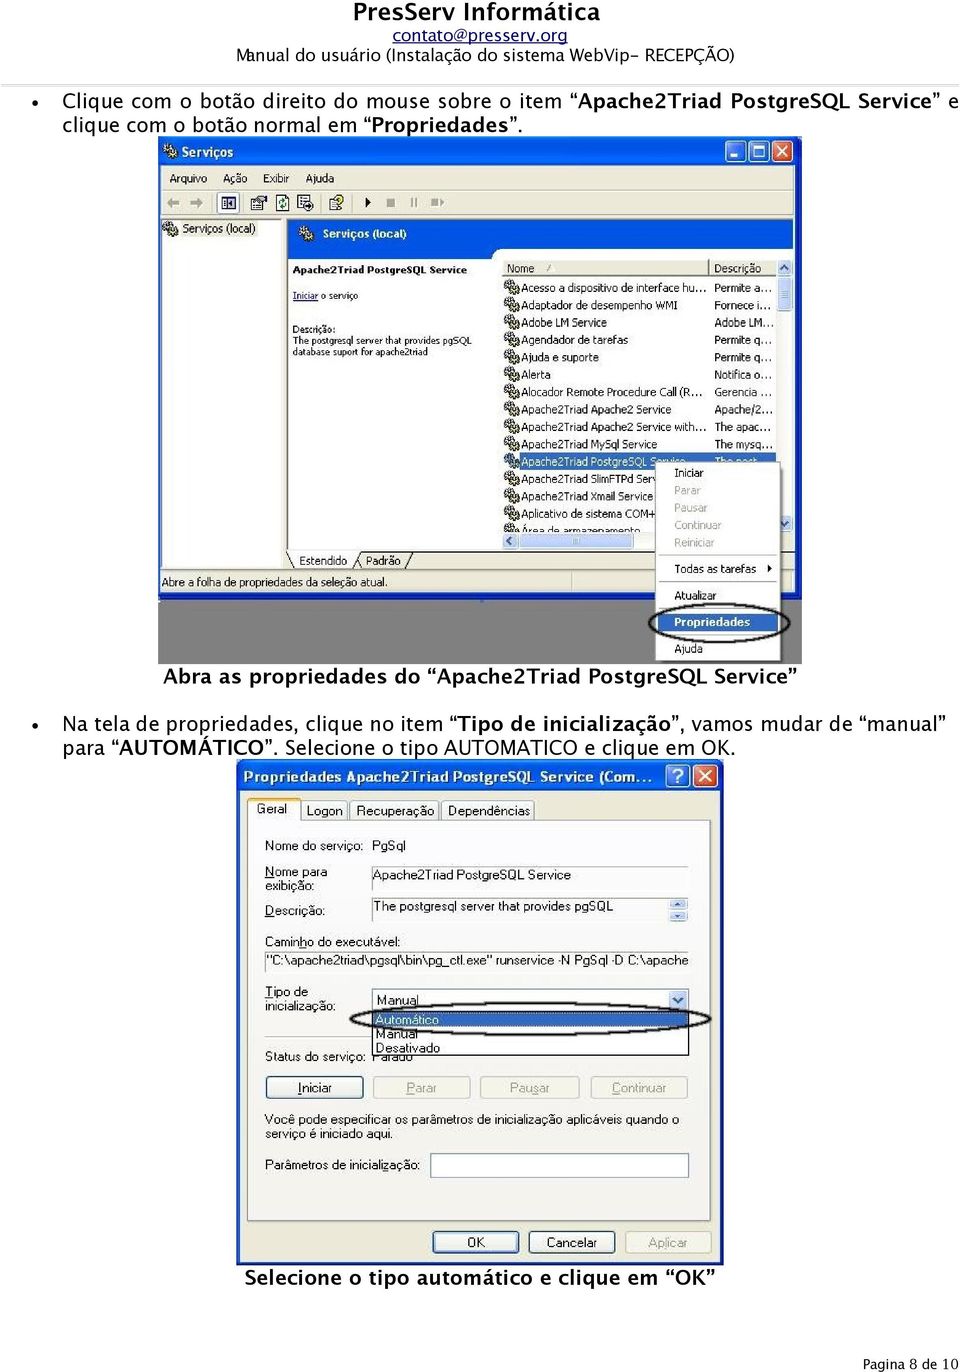 Abra as propriedades do Apache2Triad PostgreSQL Service Na tela de propriedades, clique no item